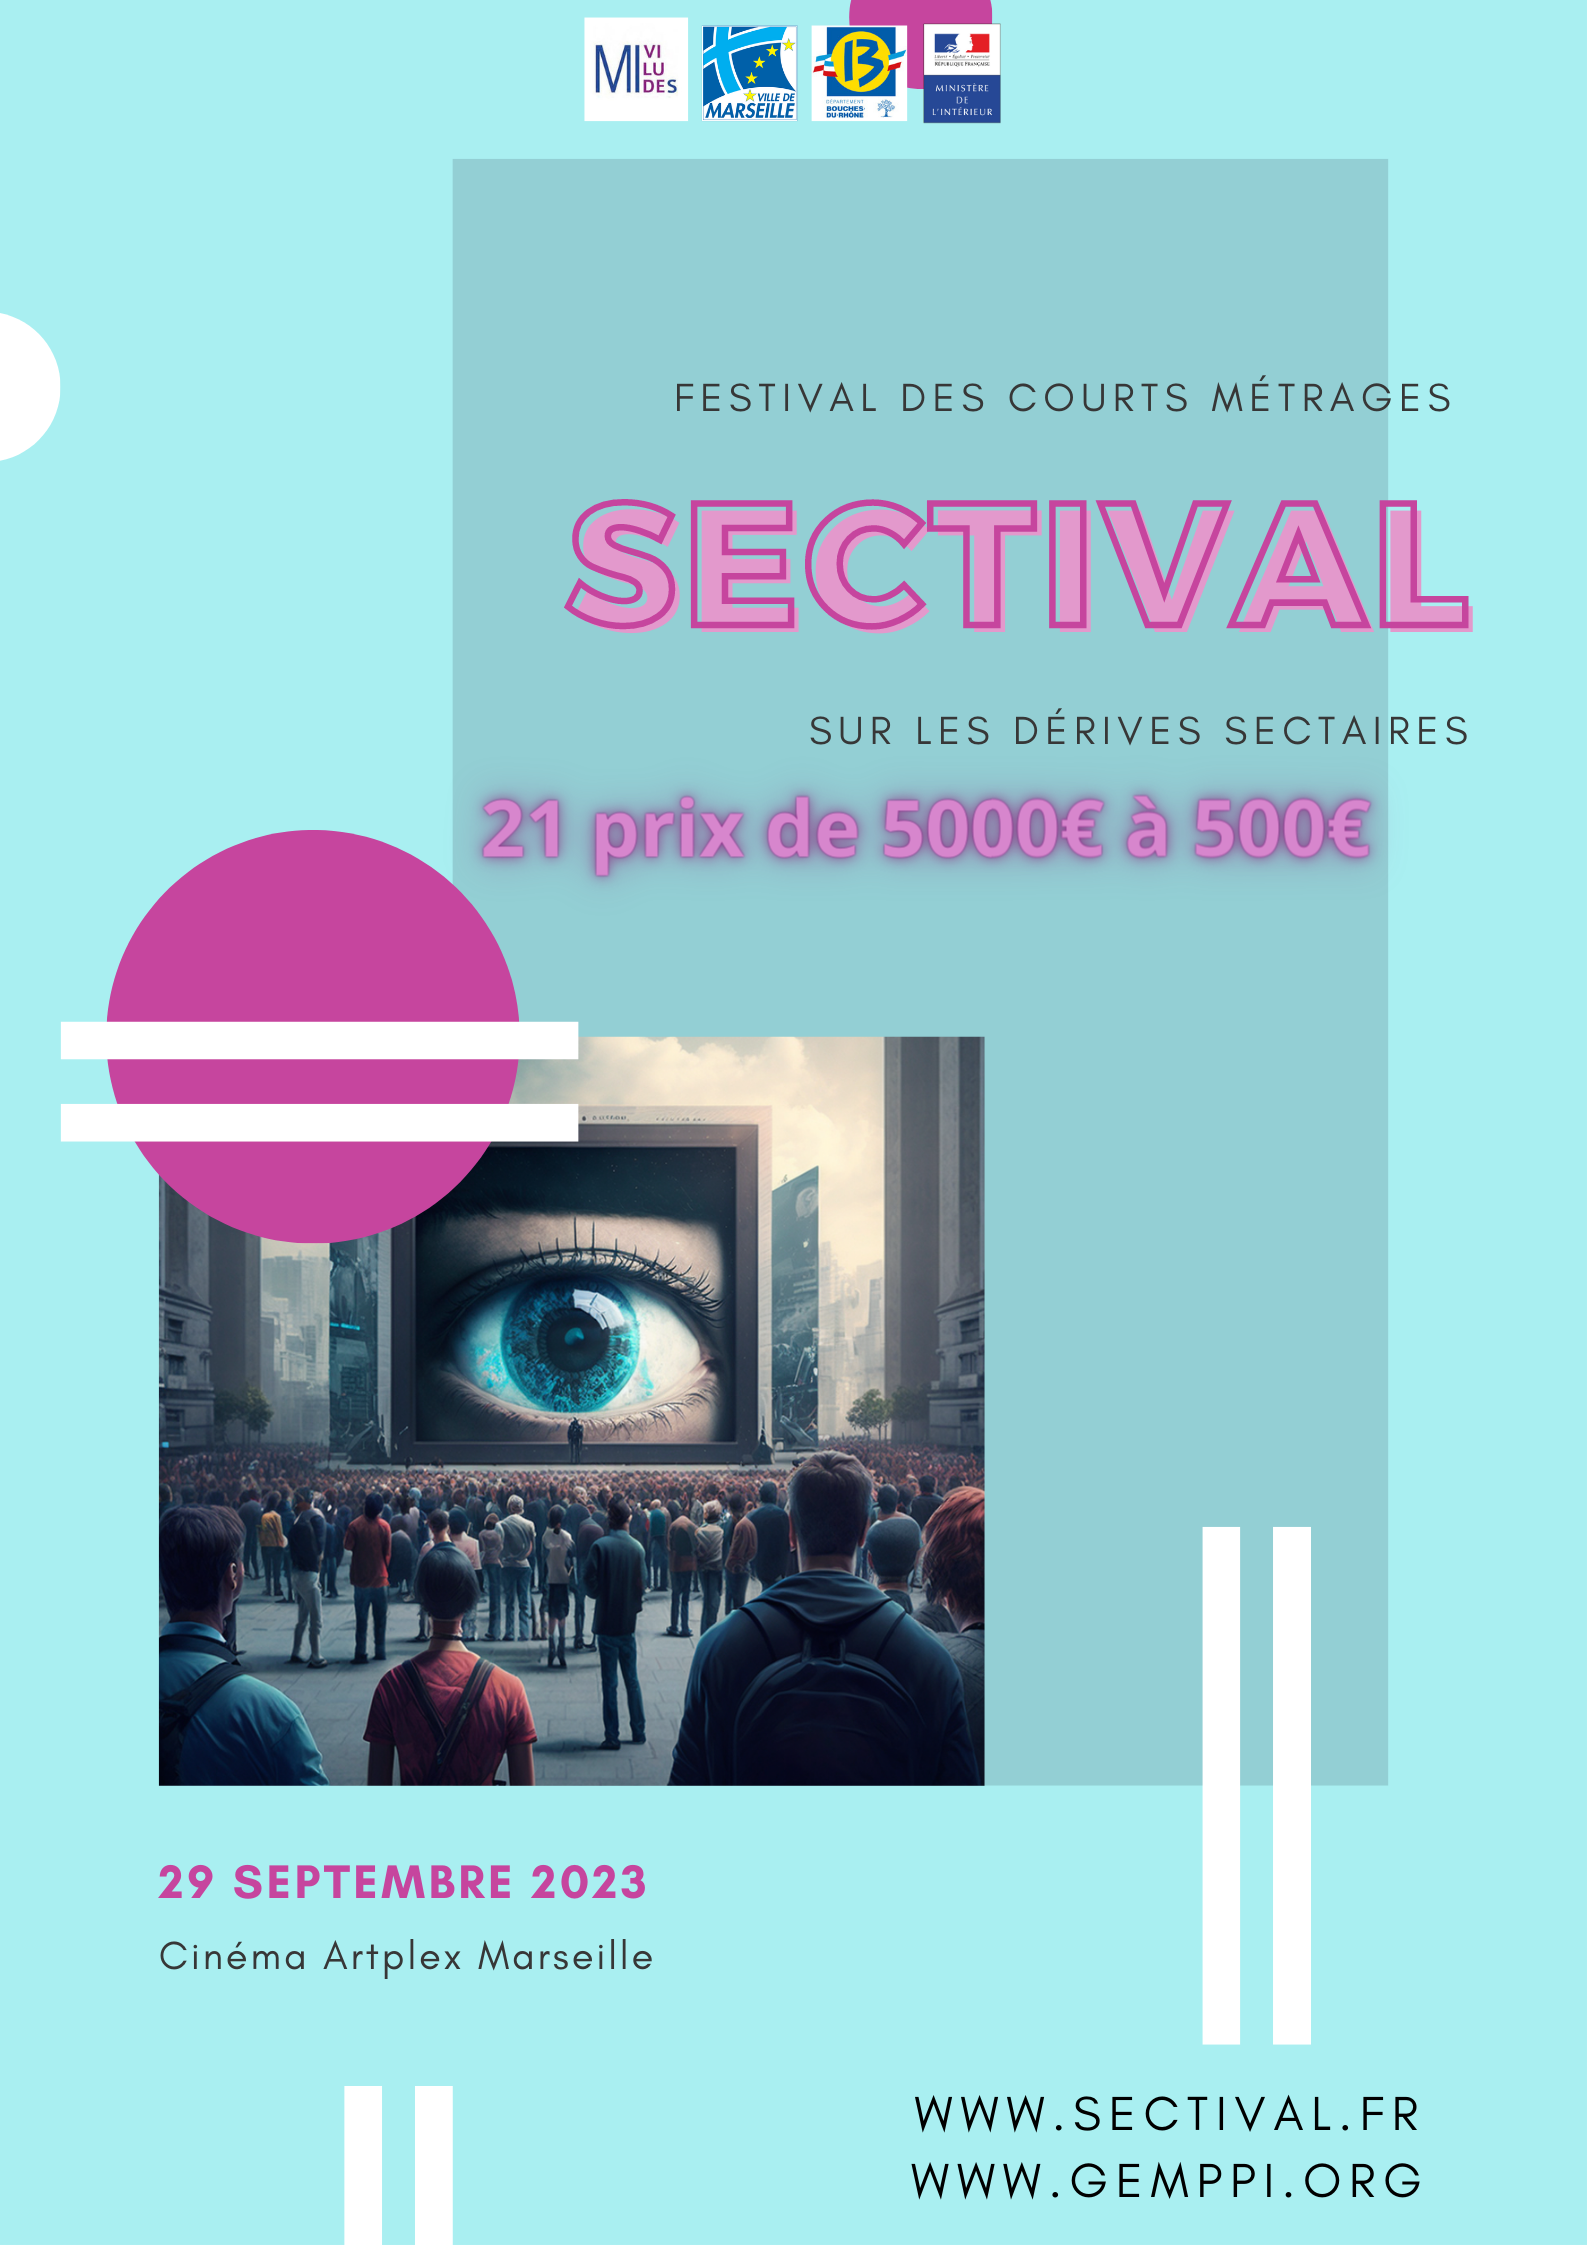 SECTIVAL, Festival de courts métrages sur les dérives sectaires 